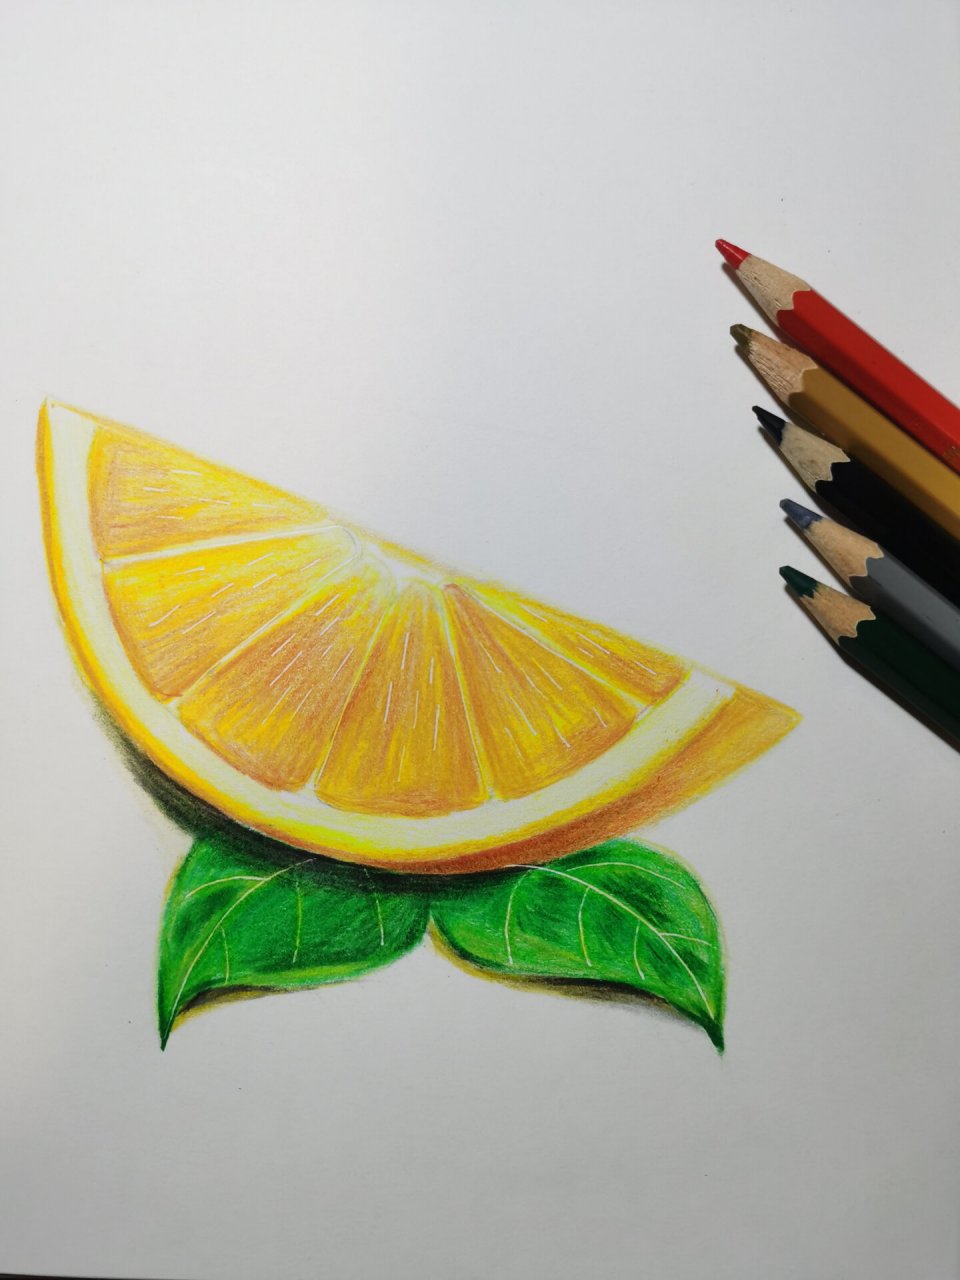 彩铅画《橙子》92内含步骤 彩铅橙子 工具材料:48色水溶性彩铅,a4